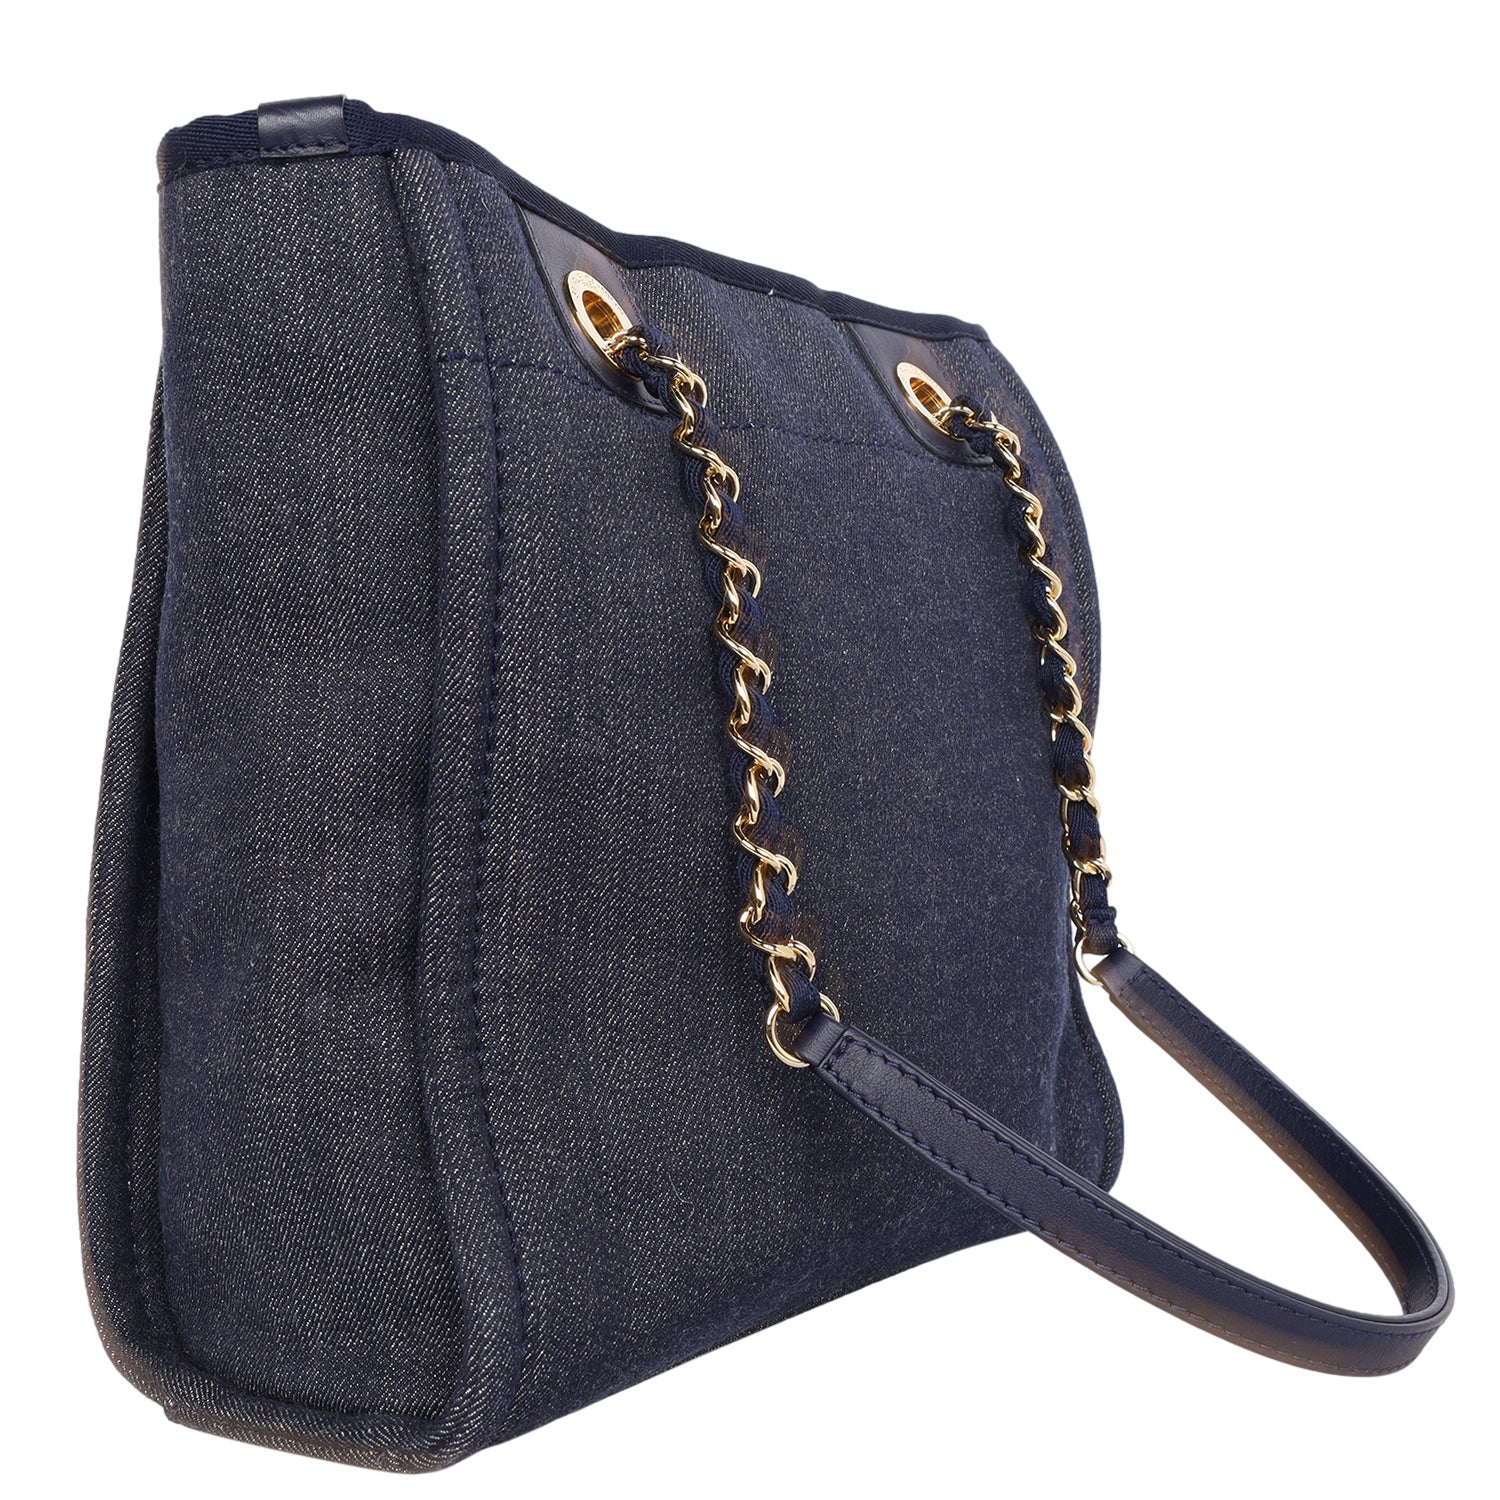 CC Canvas Leather Deauville Tote Shoulder Bag (Authentic)